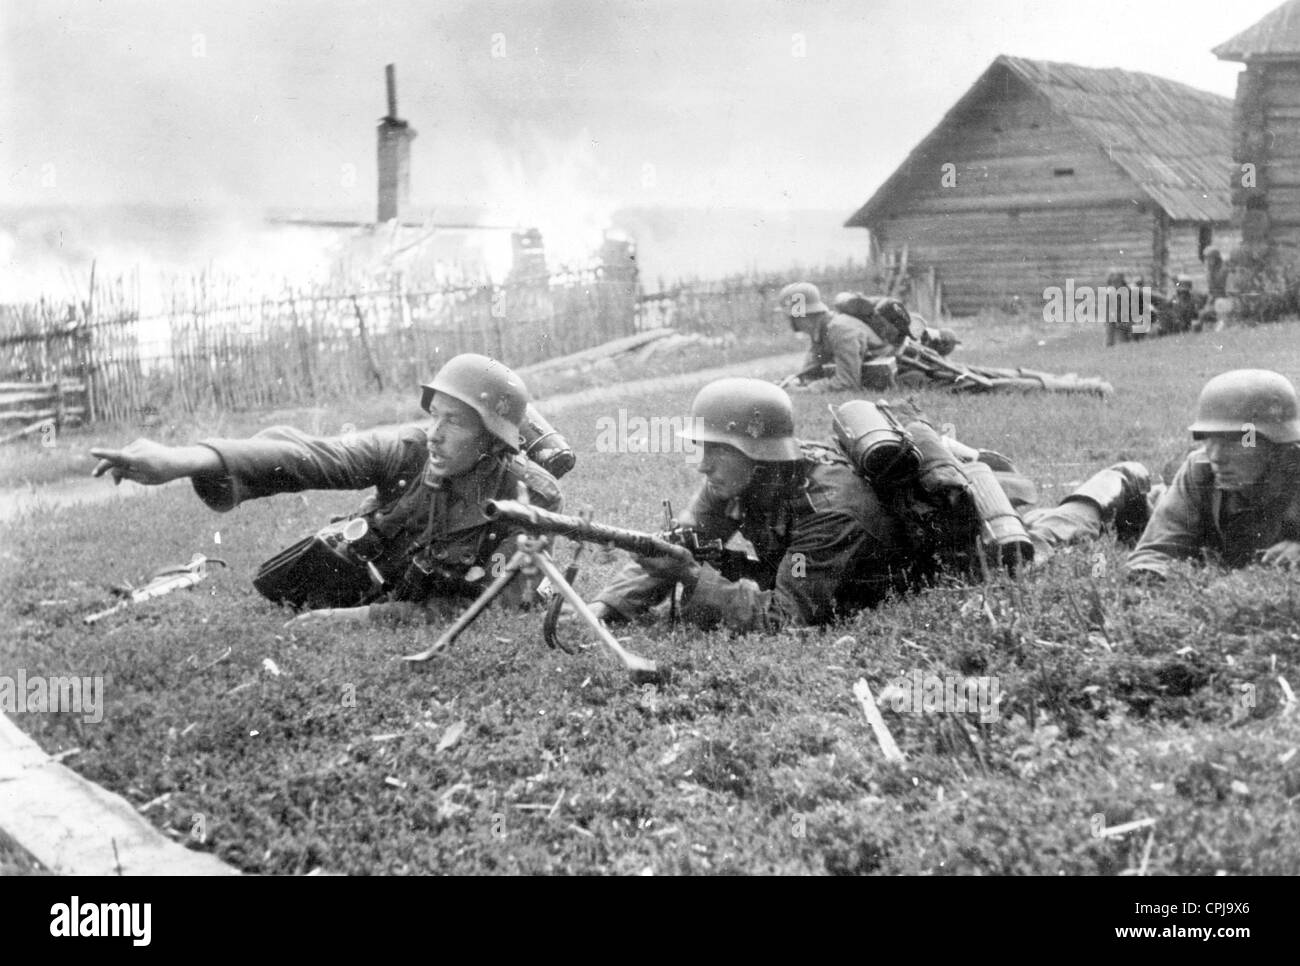 Soldat allemand au combat pour une ville, 1942 Banque D'Images